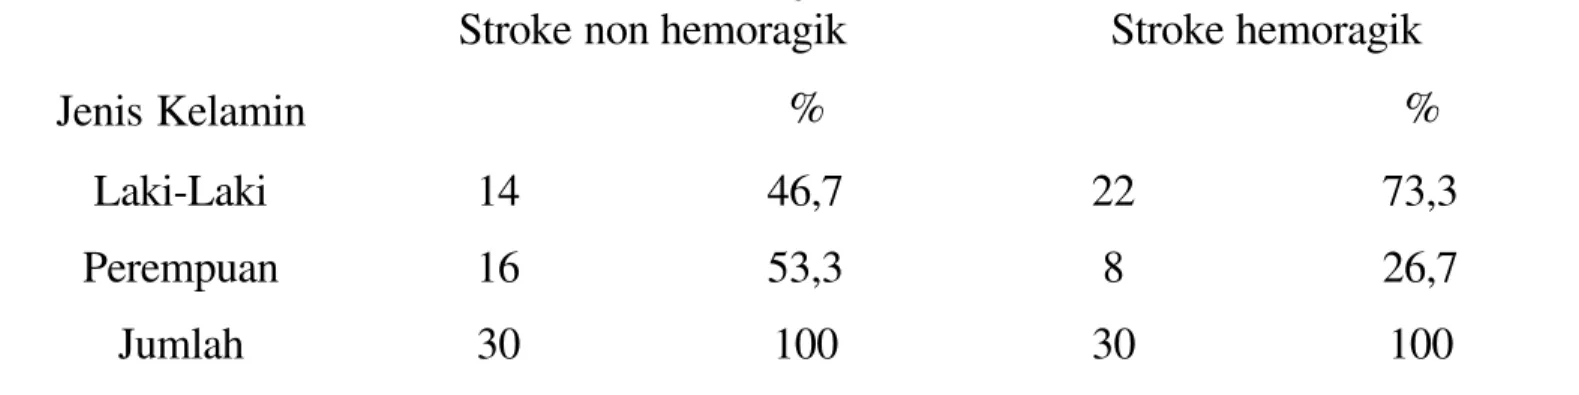 Tabel 4.1. Distribusi kejadian stoke non hemoragik dan stroke hemoragik  menurut jenis kelamin